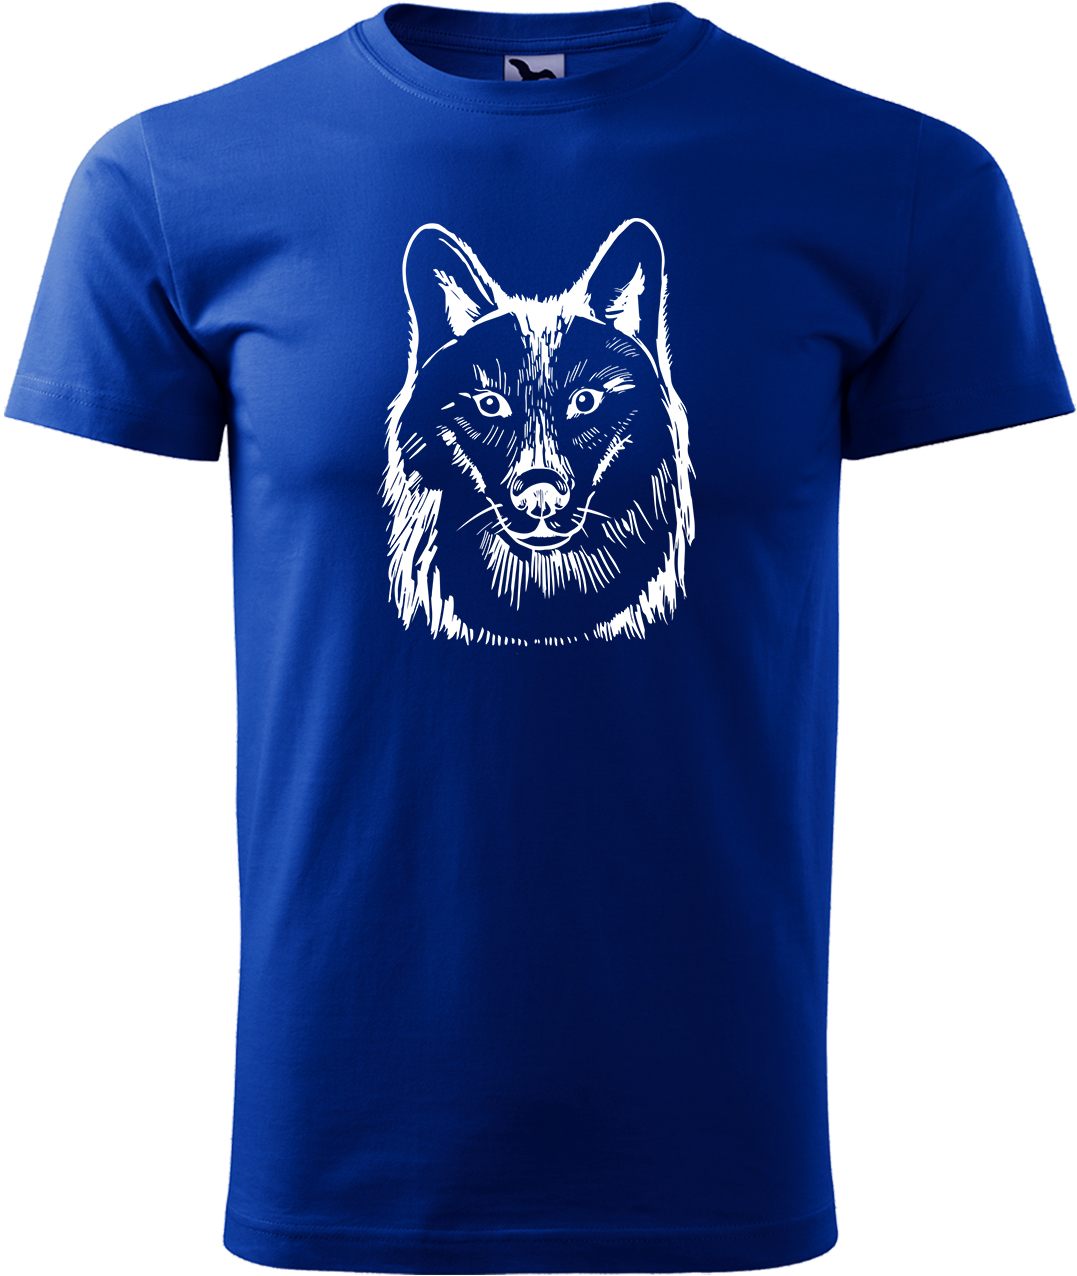 Pánské tričko s vlkem - Kresba vlka Velikost: M, Barva: Královská modrá (05), Střih: pánský